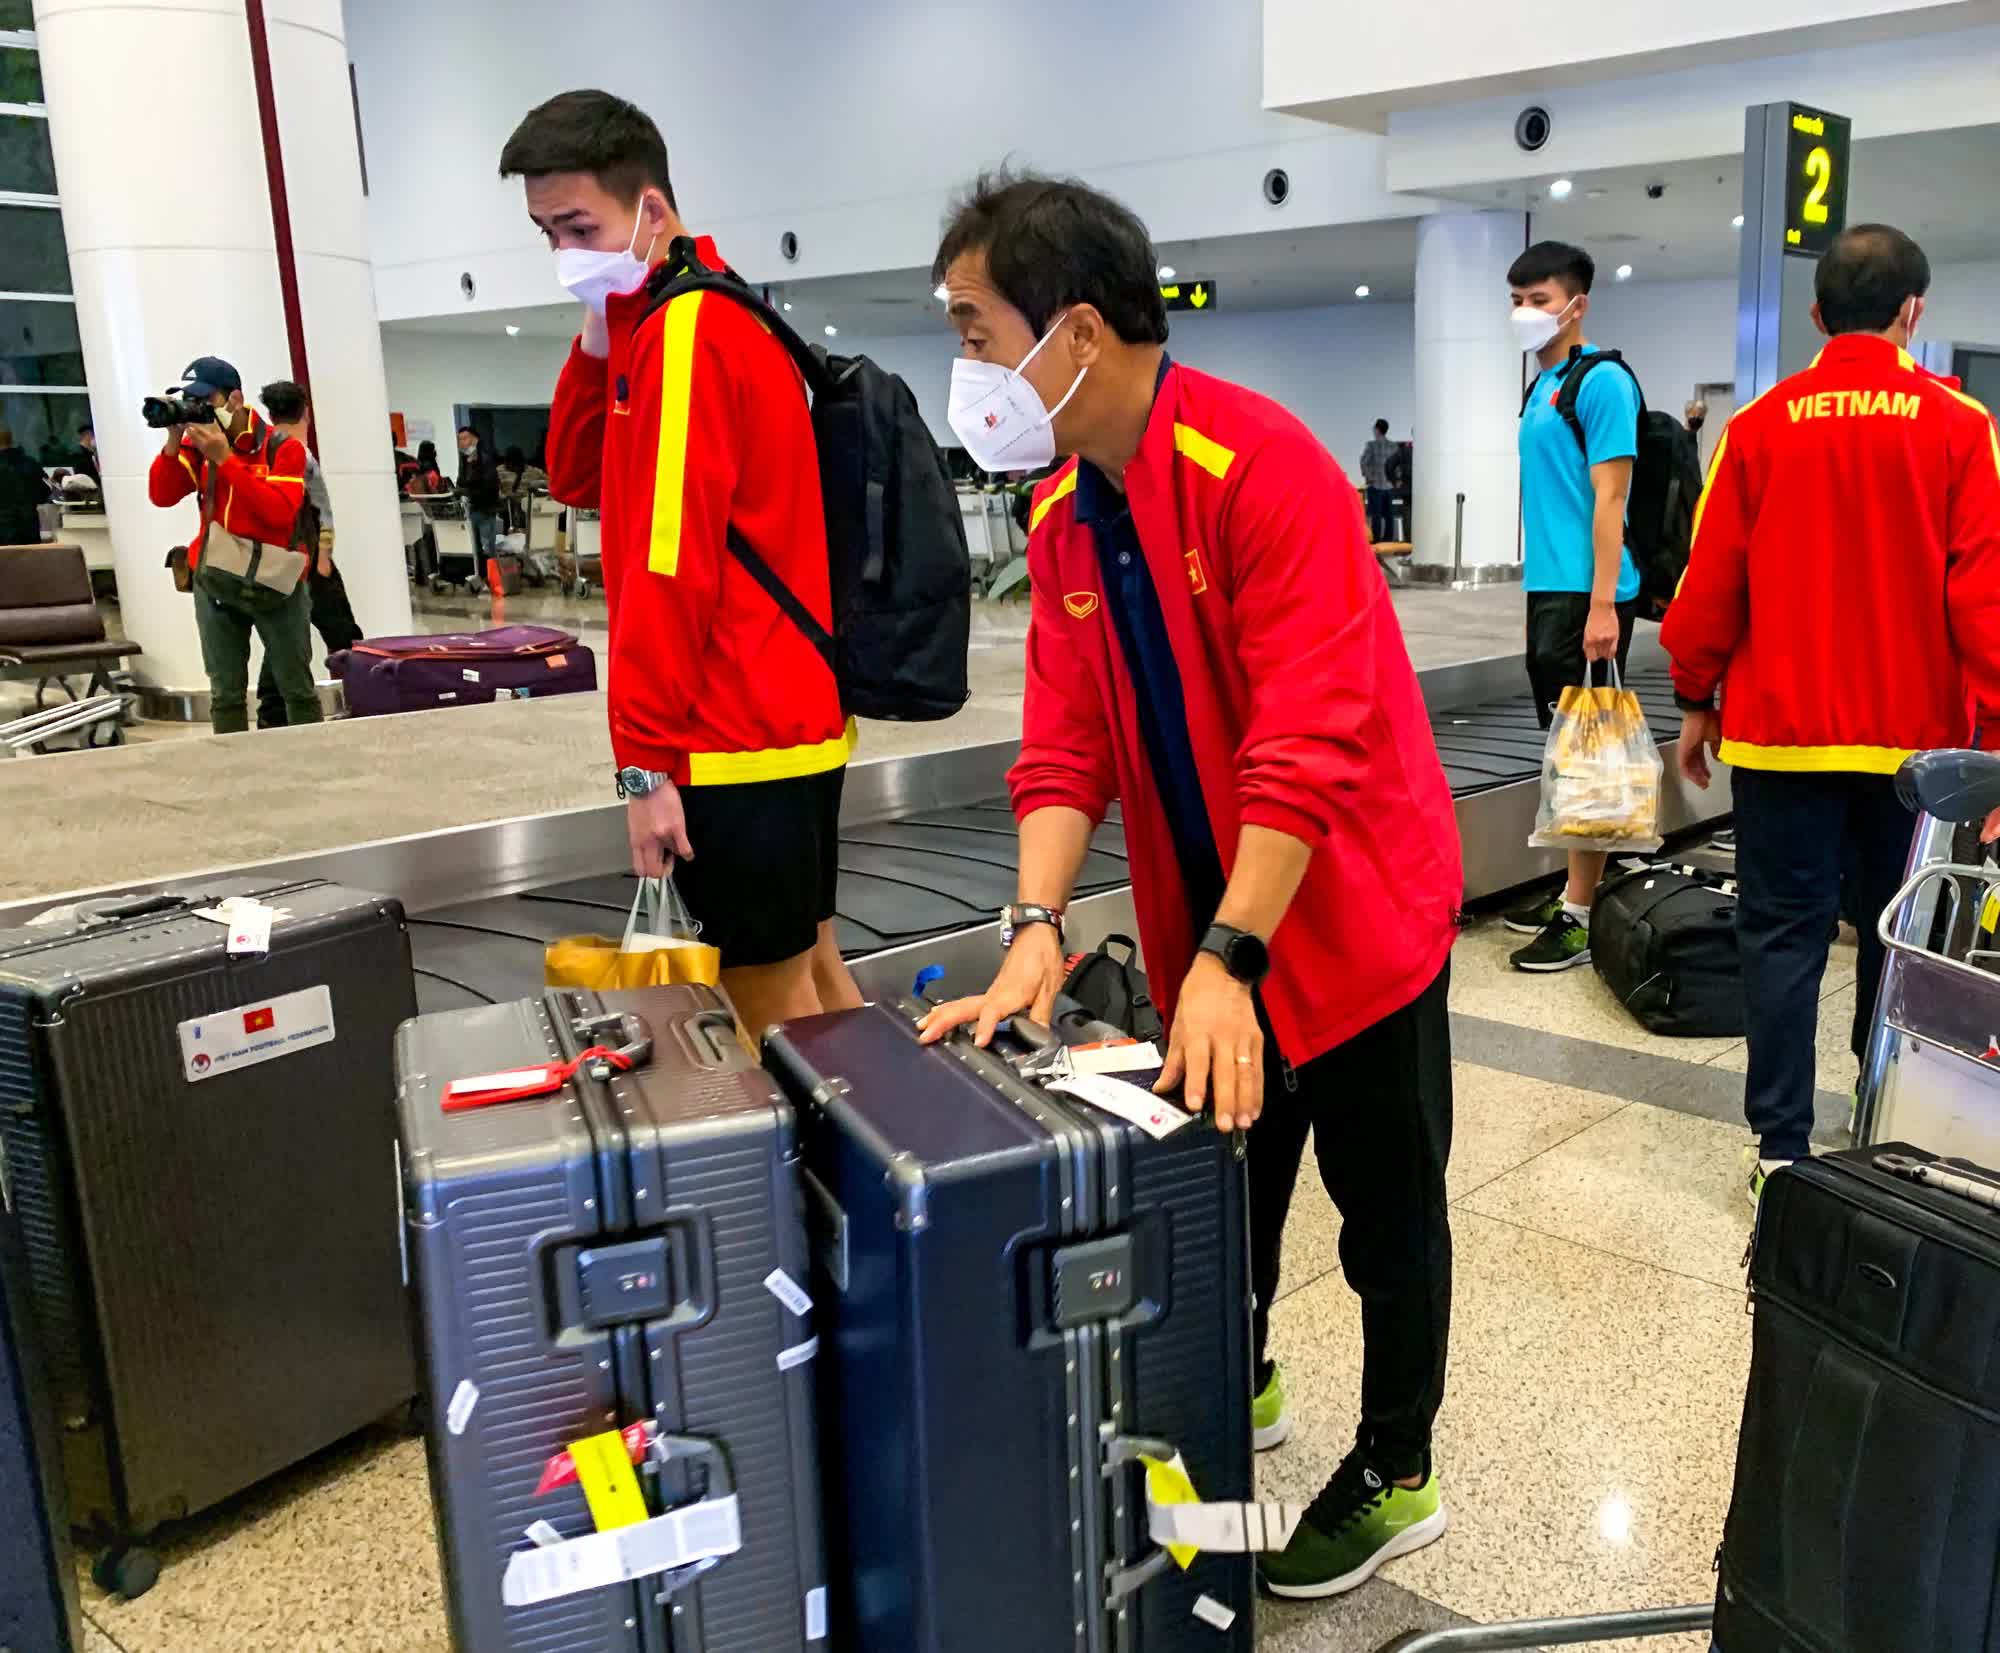 Đội tuyển Việt Nam về nước: Các cầu thủ mệt nhoài, ngồi chờ lấy hành lý - Ảnh 6.